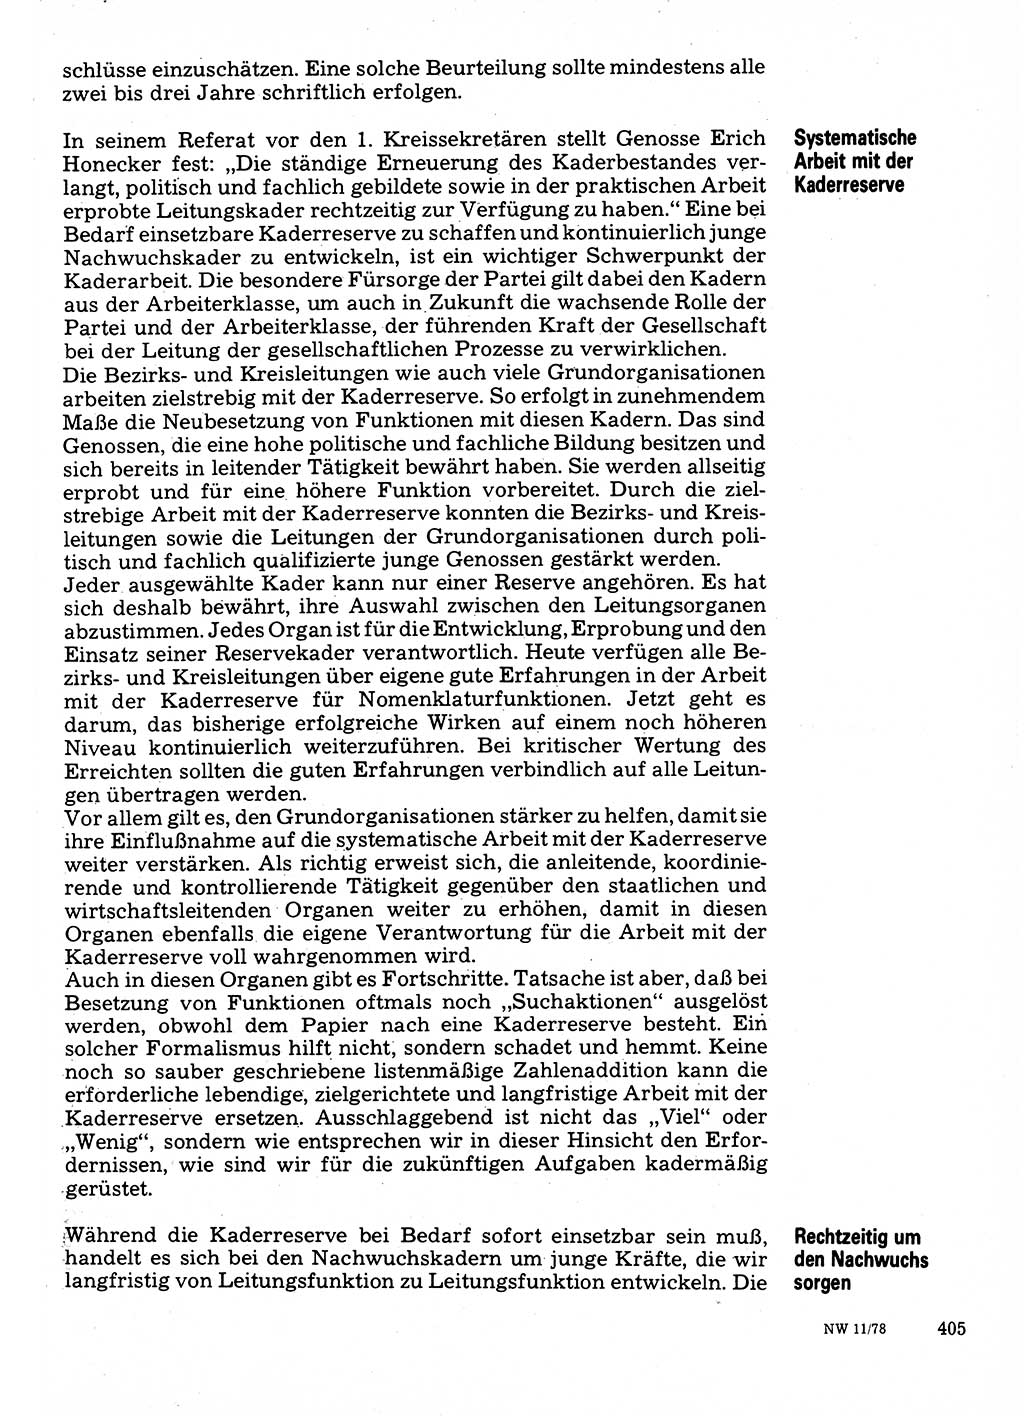 Neuer Weg (NW), Organ des Zentralkomitees (ZK) der SED (Sozialistische Einheitspartei Deutschlands) für Fragen des Parteilebens, 33. Jahrgang [Deutsche Demokratische Republik (DDR)] 1978, Seite 405 (NW ZK SED DDR 1978, S. 405)